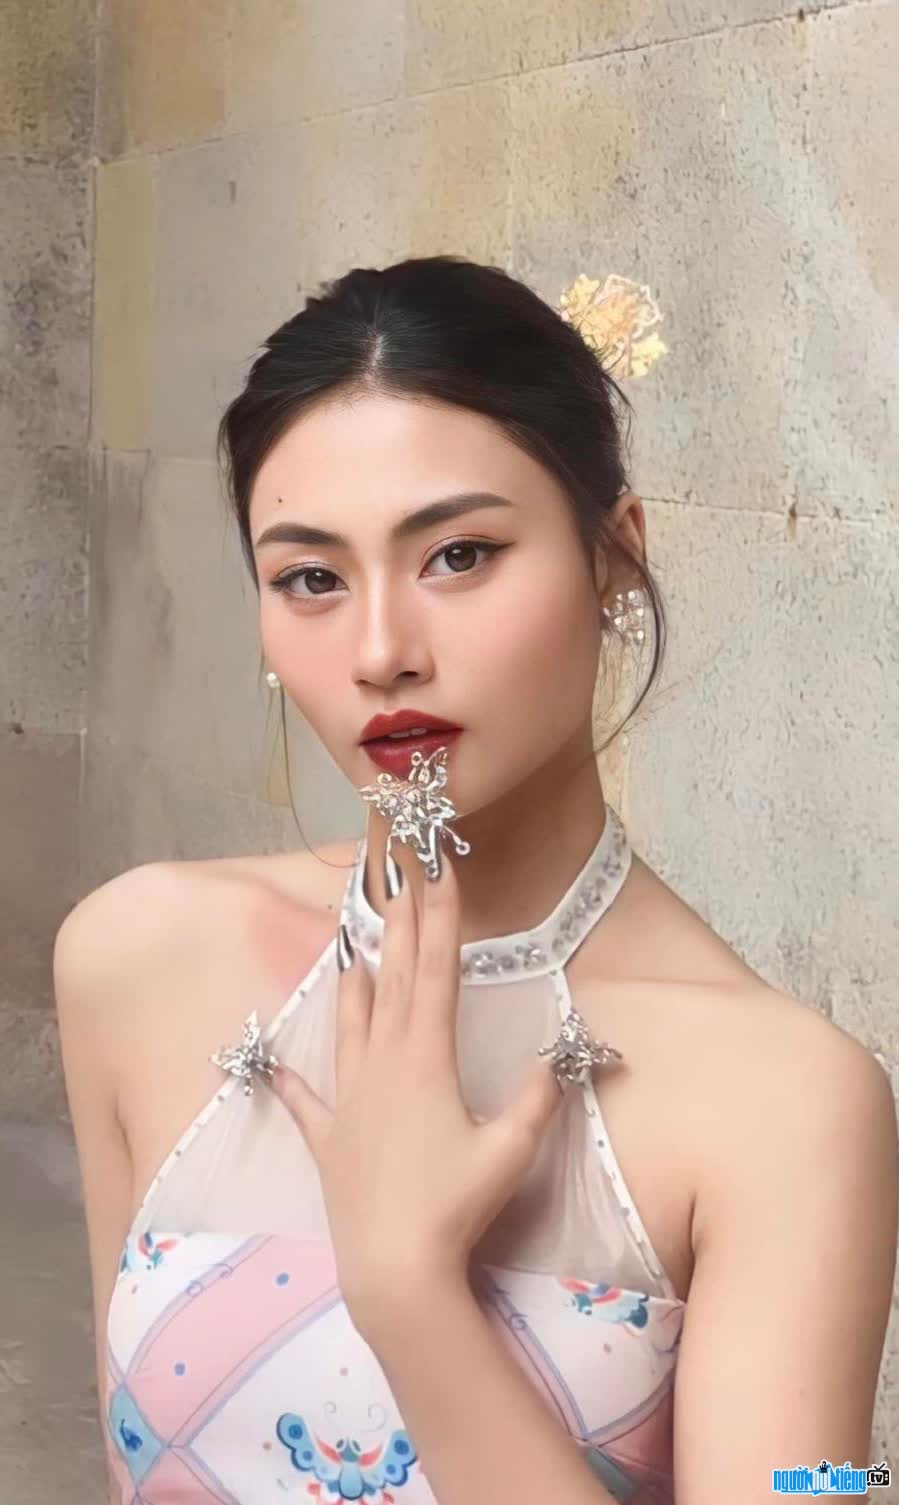 Model Hanh Bui possesses beautiful beauty